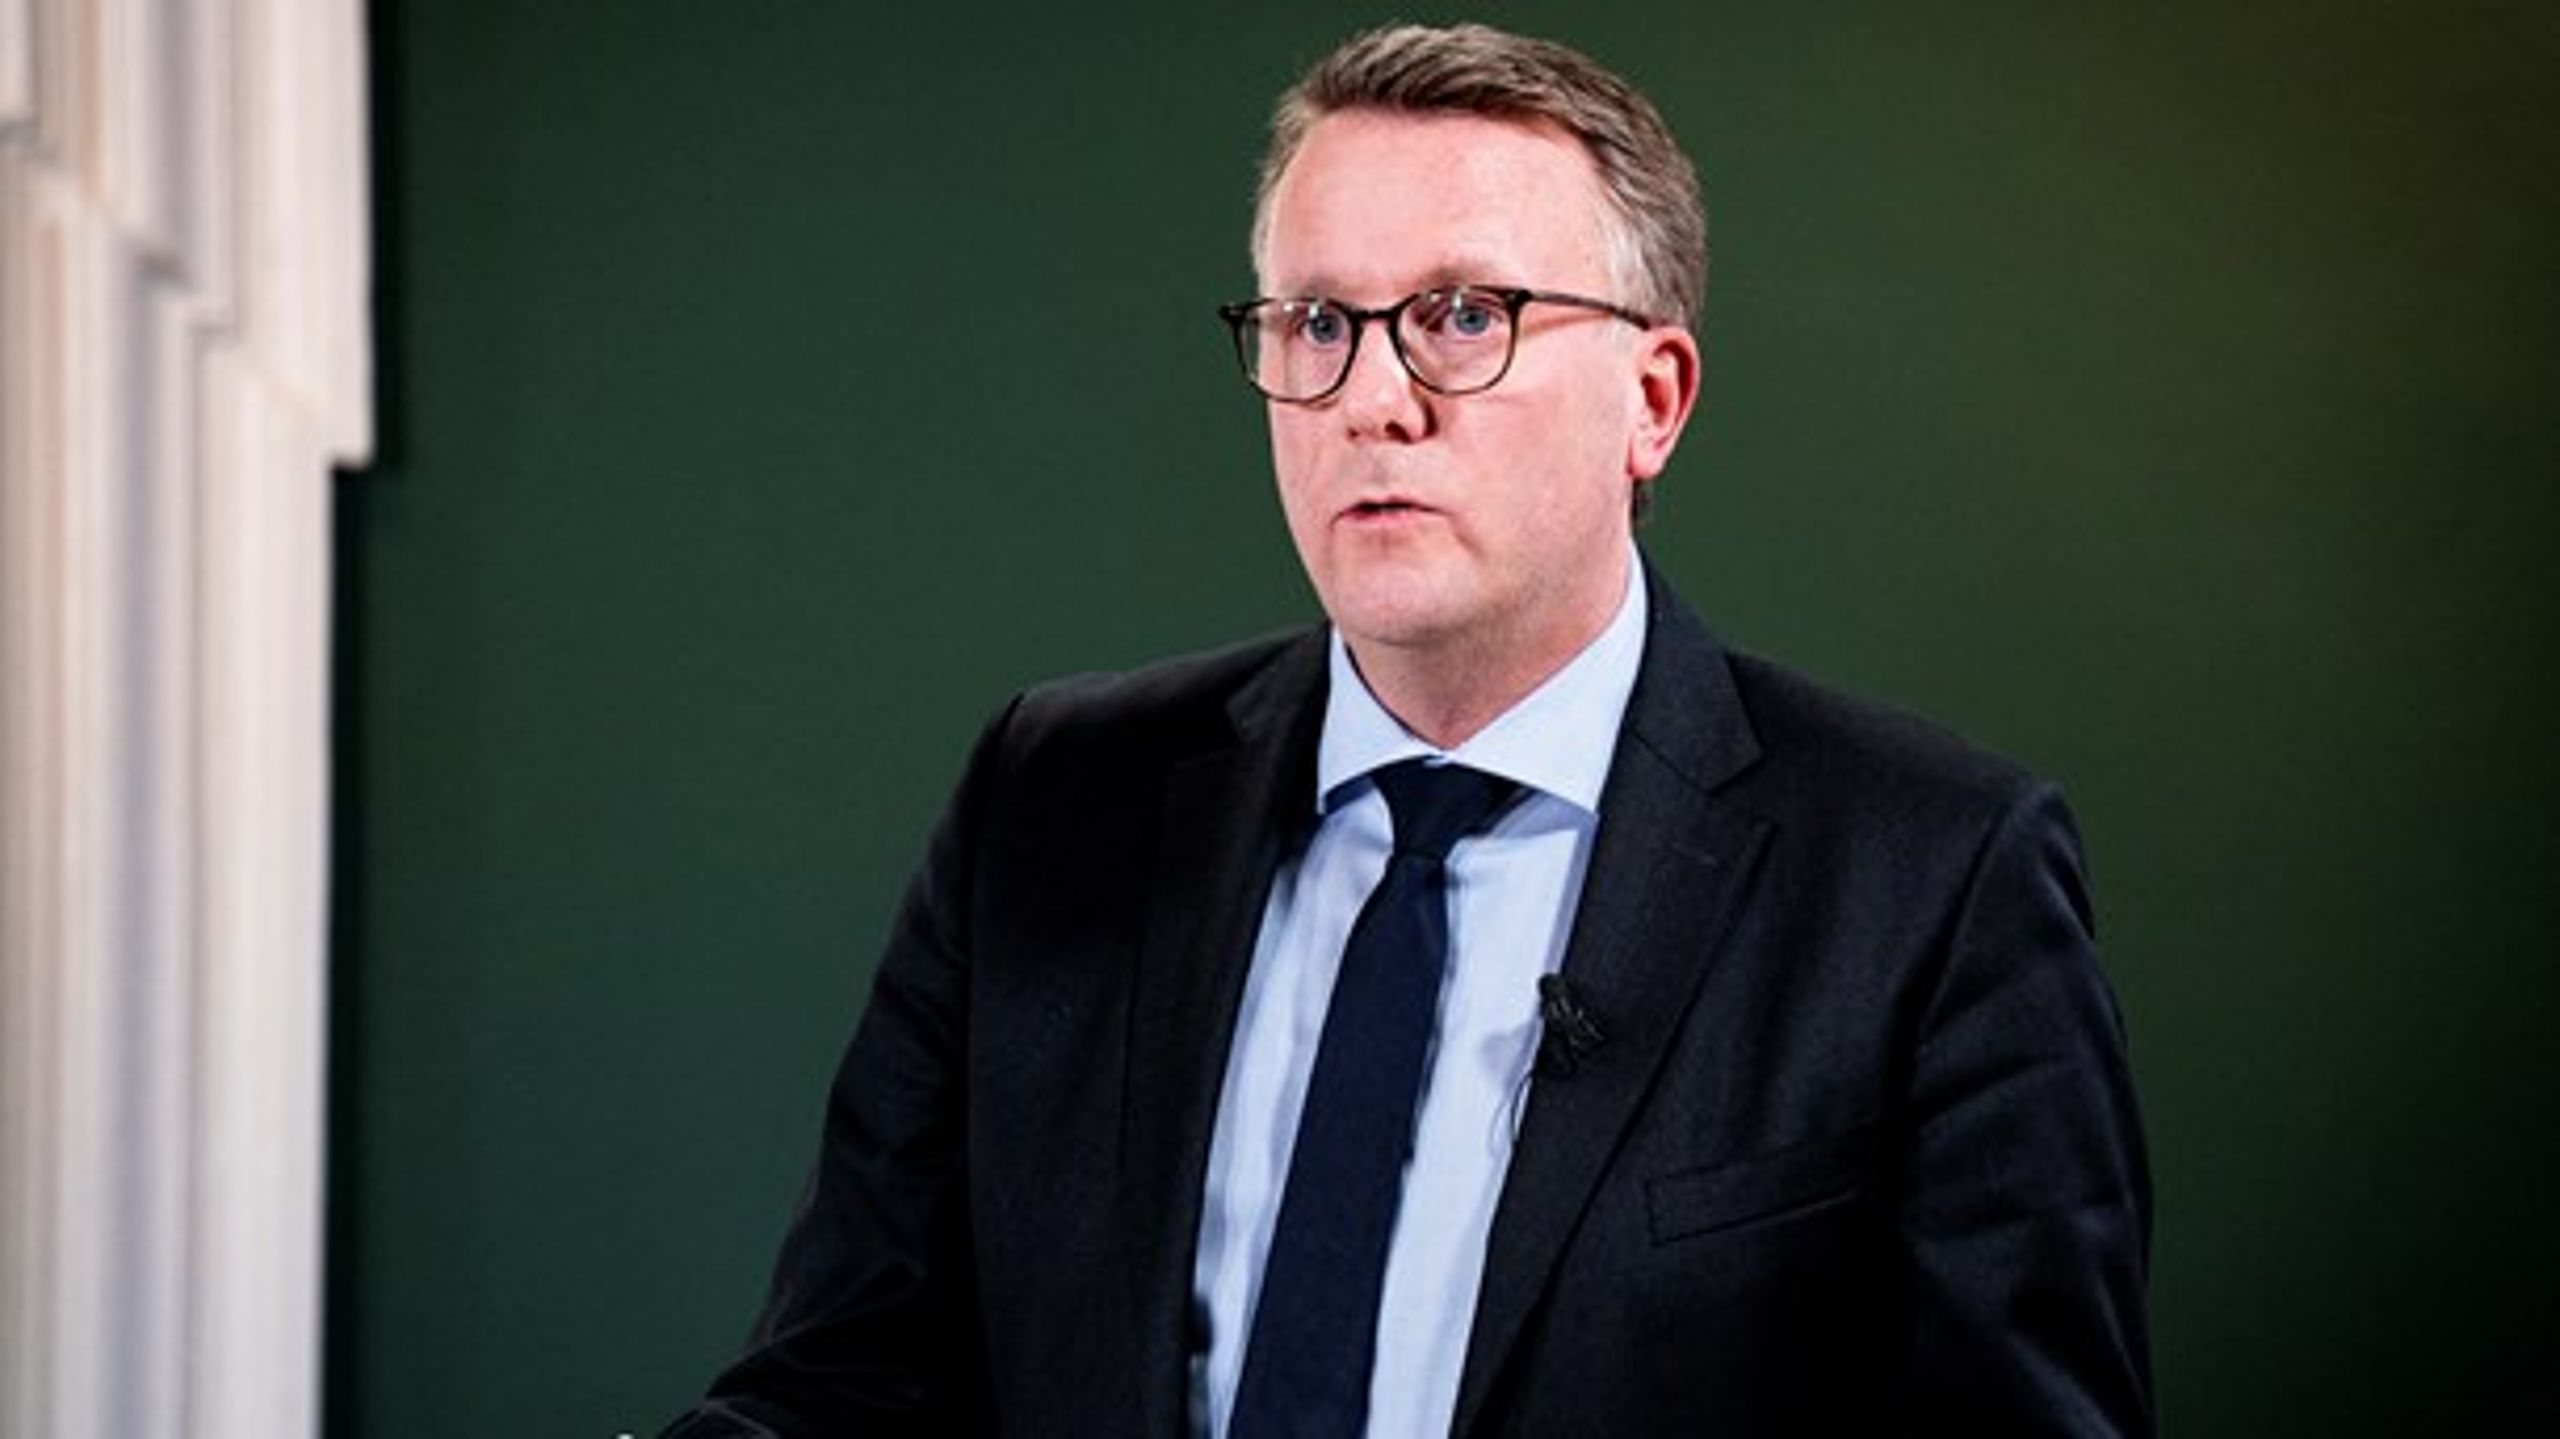 "Vi er allerede ved at se på mulige løsninger, så Danmark fuldt ud overholder EU-reglerne på området," siger skatteminister Morten Bødskov (S).